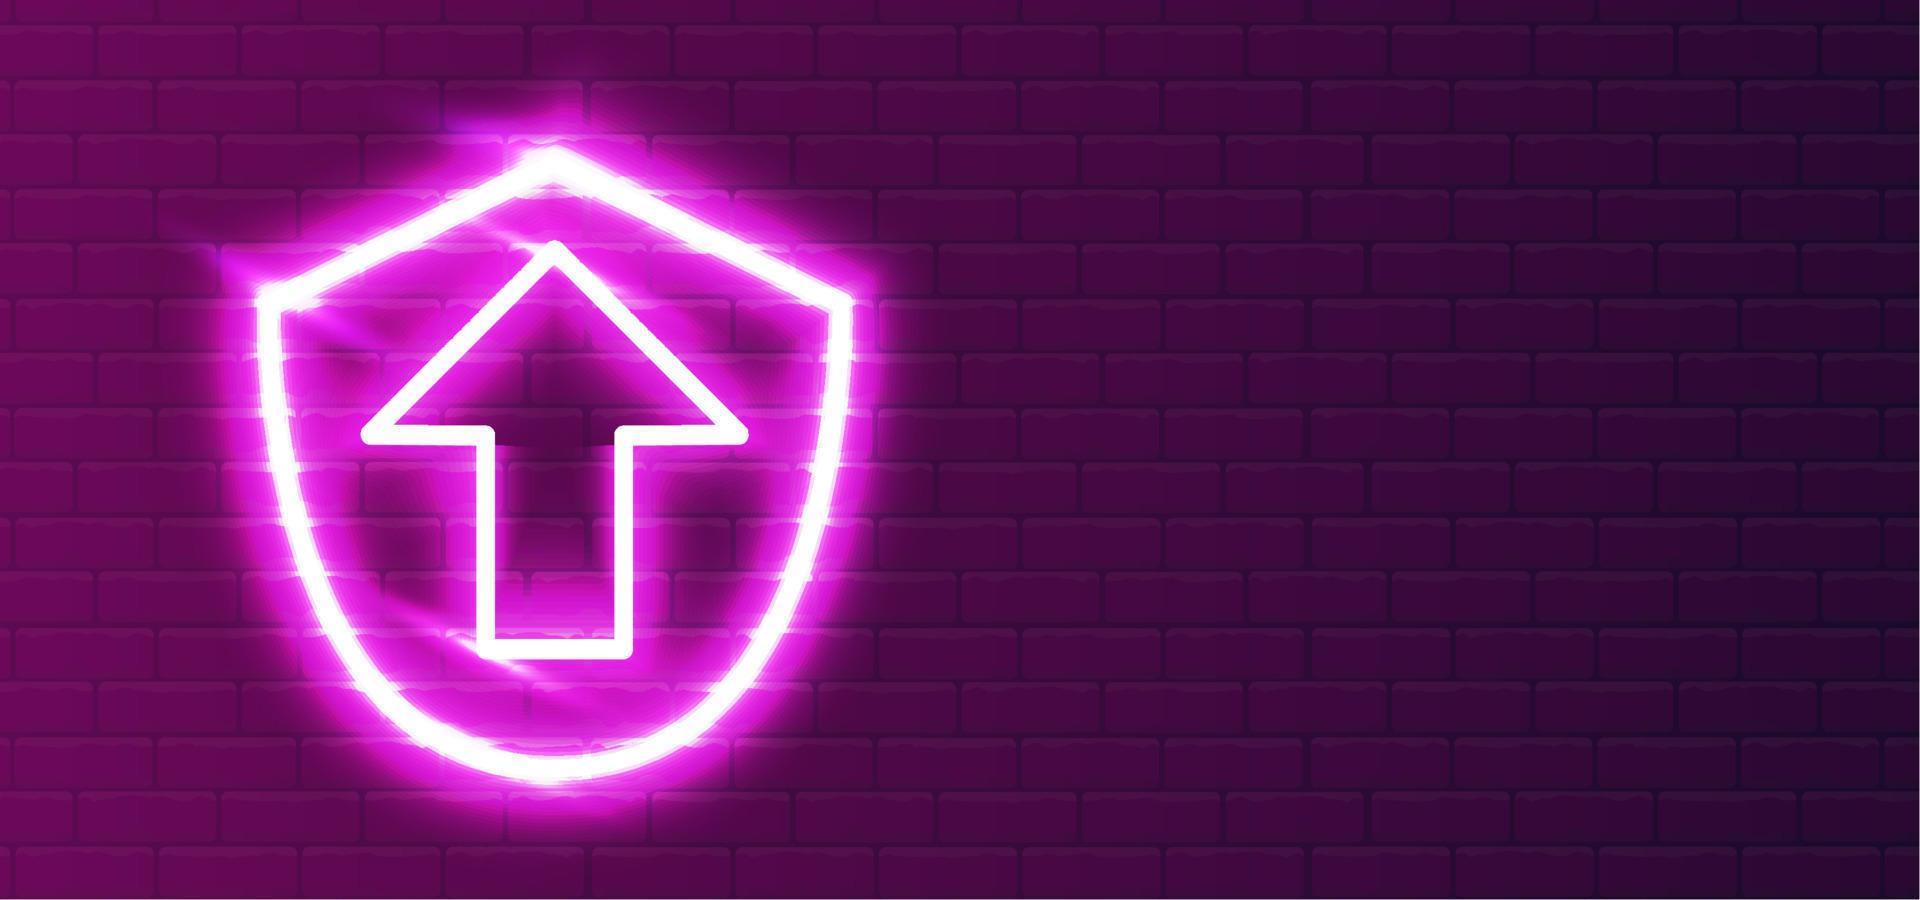 geleid rood-violet super helder neon beveiligingsschild upgrade icoon type. lees realistisch neon-beveiligingsschild. loopgraaf beveiliging upgrade. beveiligingsschild nachtshow aan de muur. muur achtergrond. vector